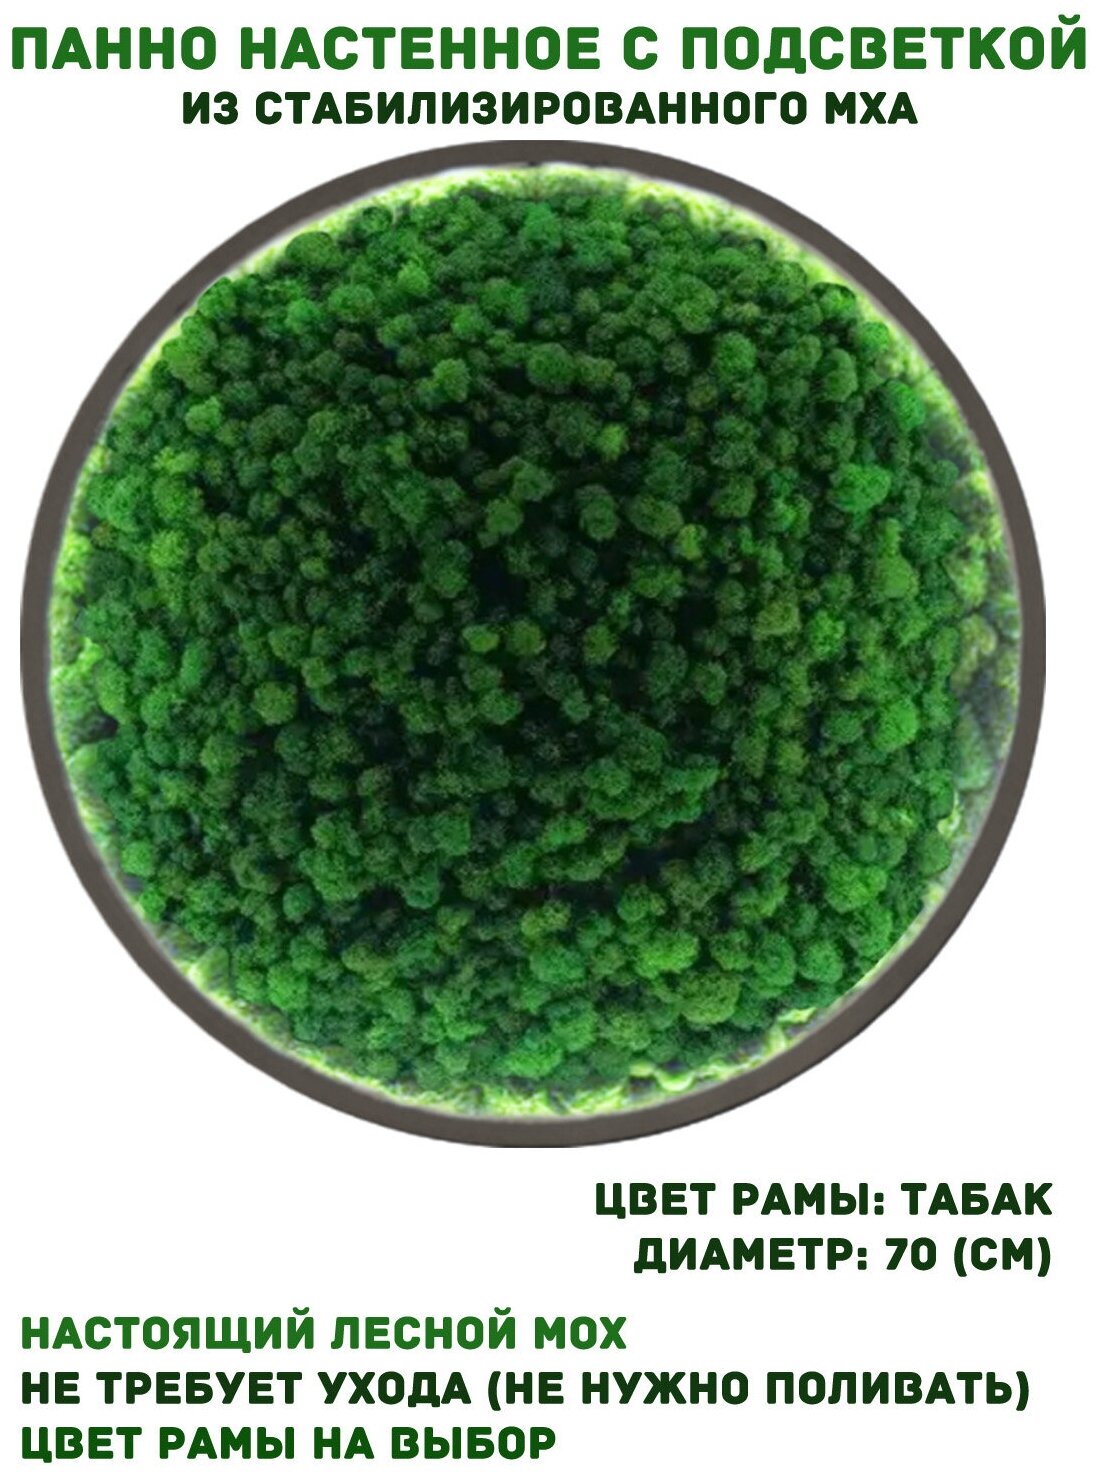 Круглое панно из стабилизированно мха GardenGo с подсветкой в рамке цвета табак диаметр 70 см, цвет мха зеленый